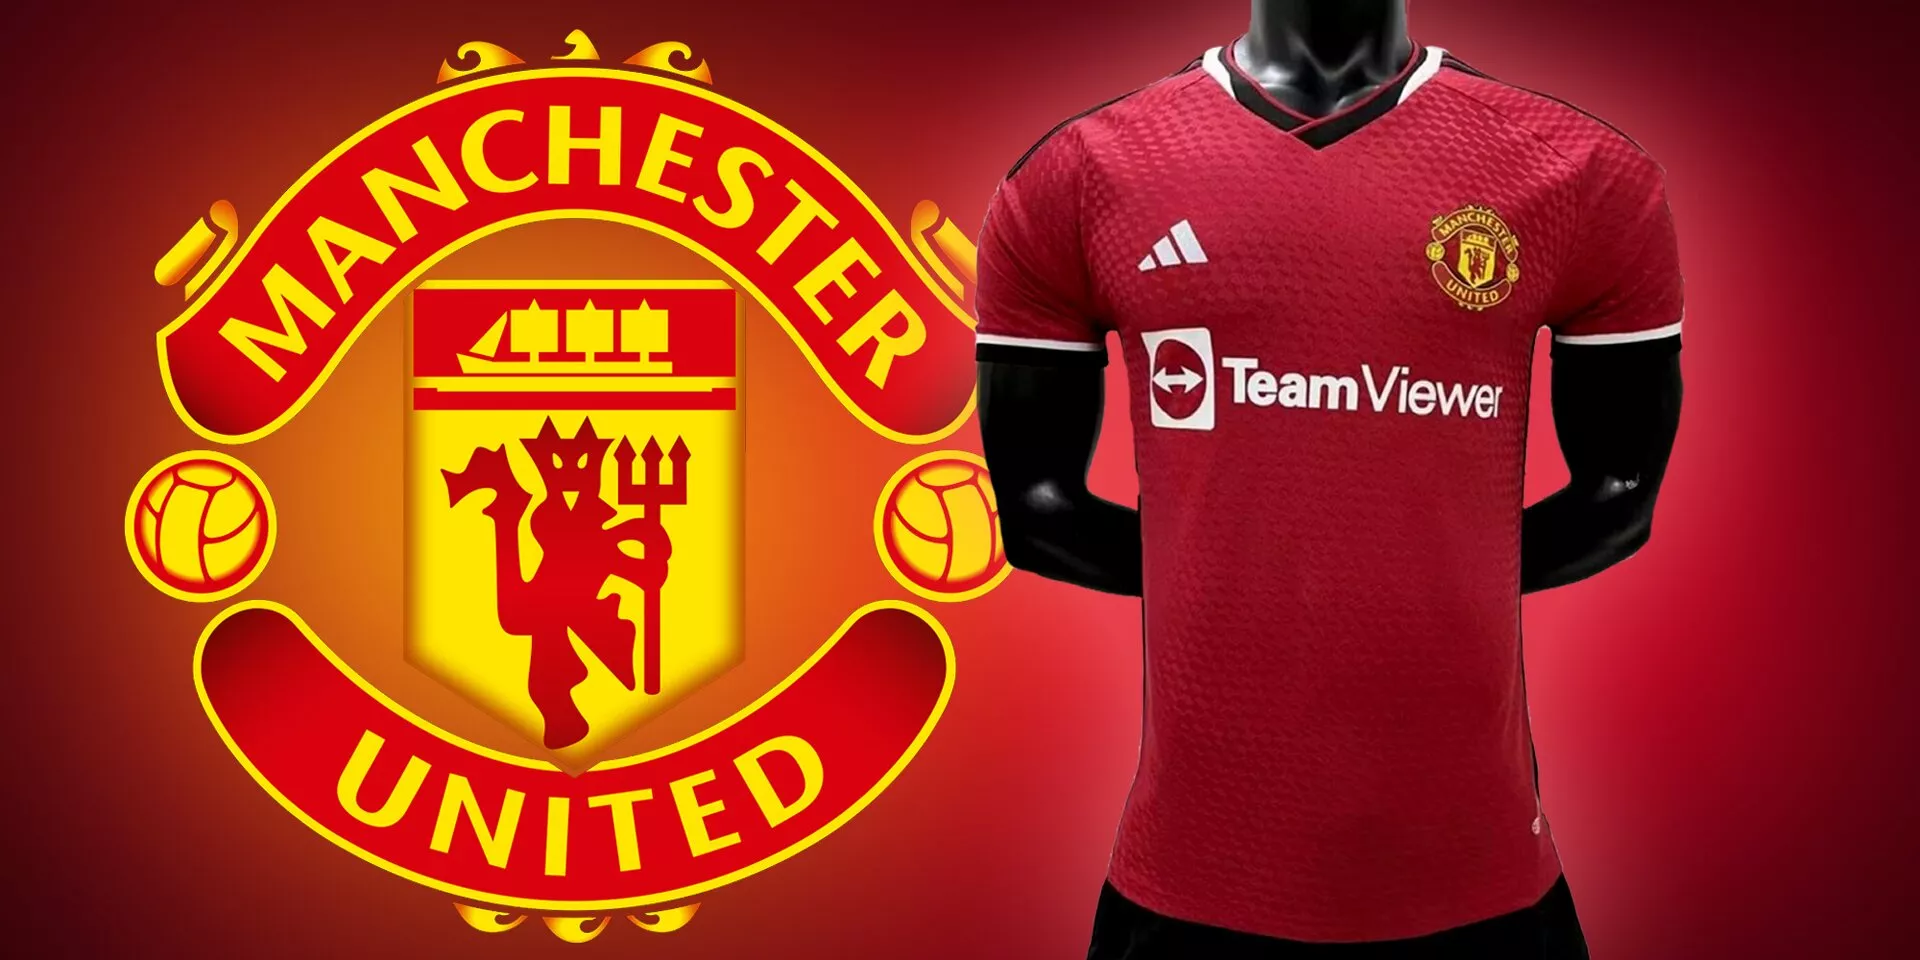 Manchester United home kit for 202324 season leaked